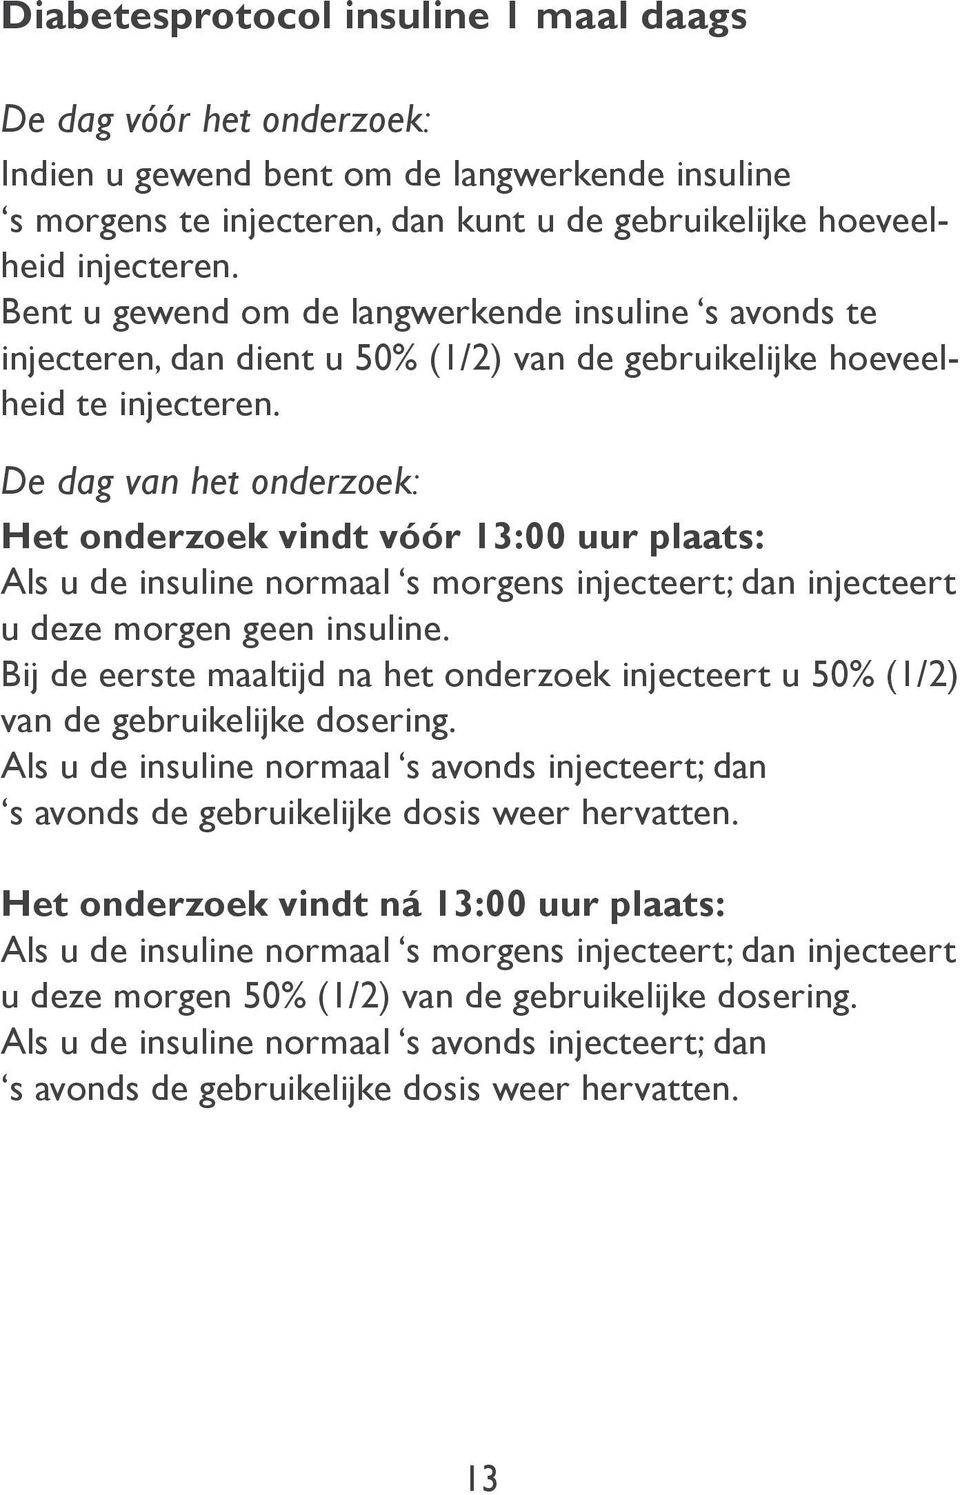 De dag van het onderzoek: Het onderzoek vindt vóór 13:00 uur plaats: Als u de insuline normaal s morgens injecteert; dan injecteert u deze morgen geen insuline.